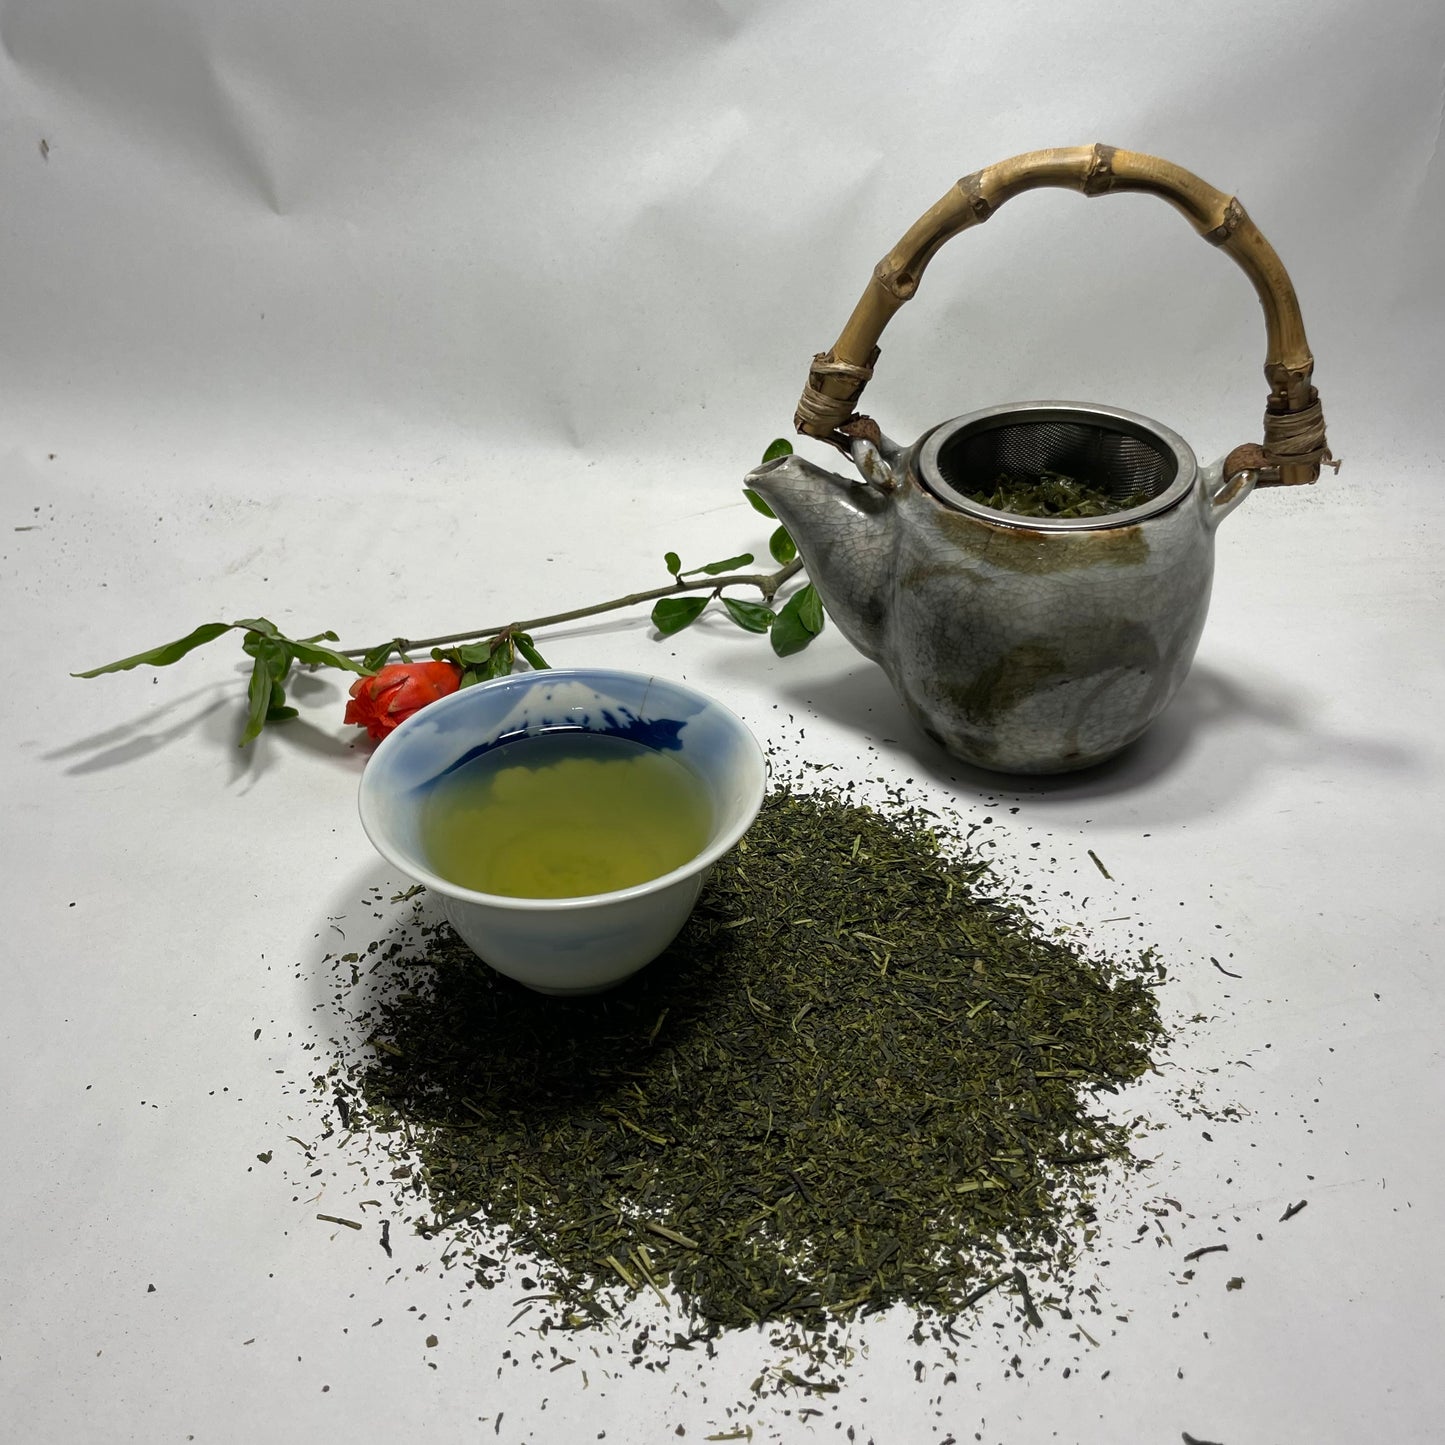 Tsuyuhikari - Single Origin Green Tea